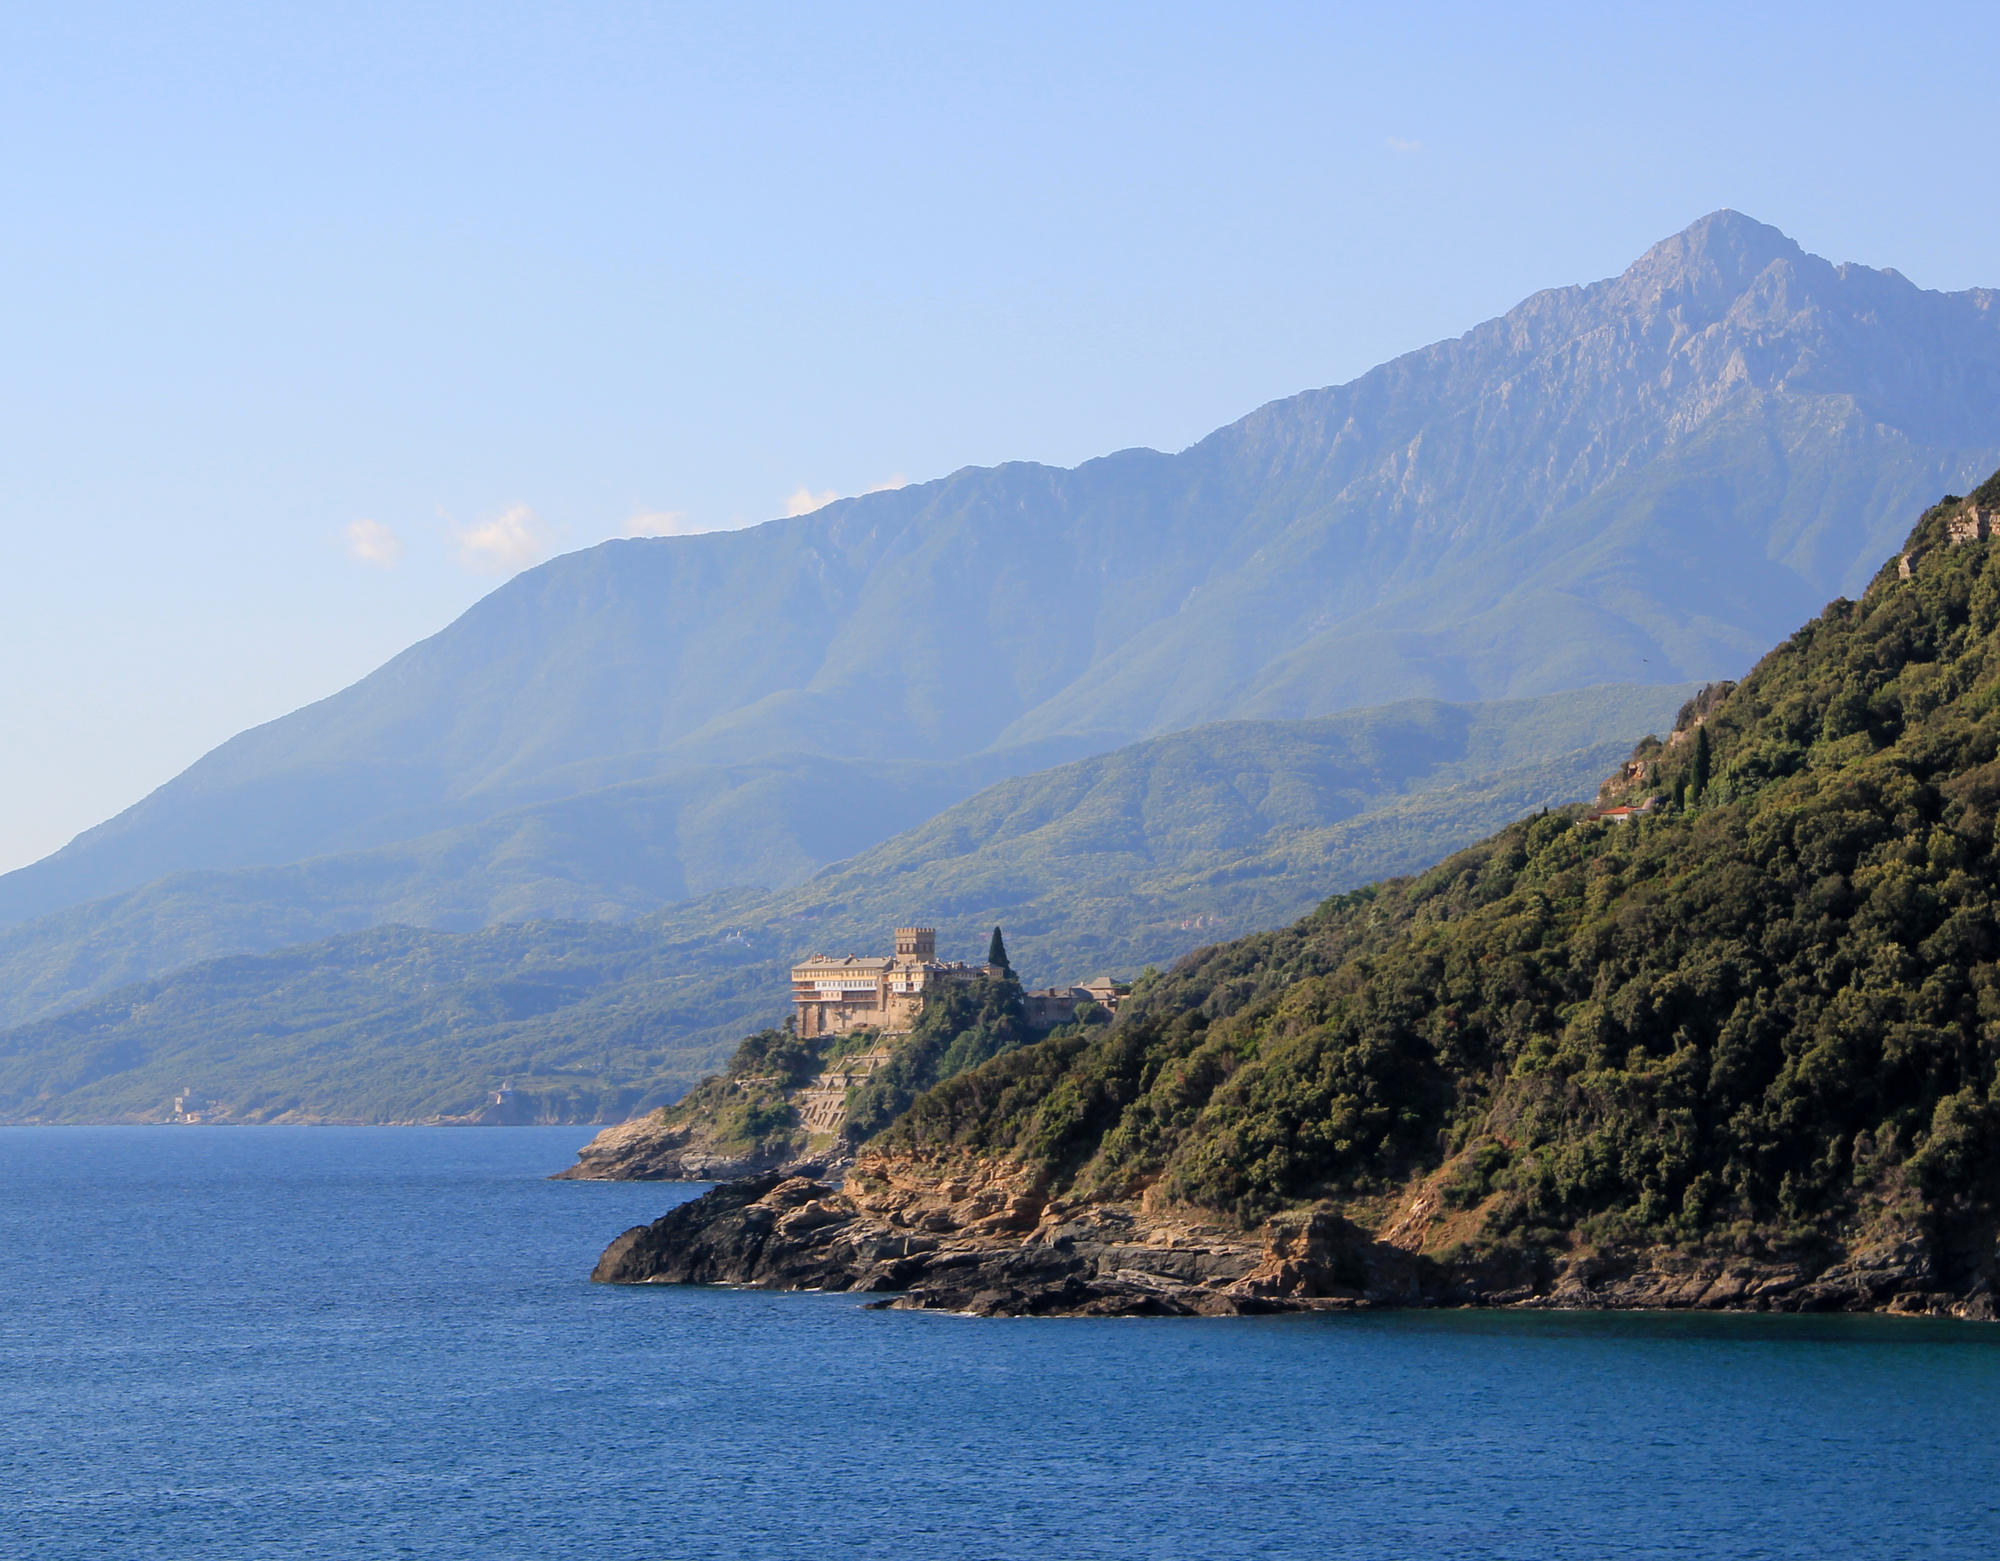 Mount Athos with the Monastery of Stavronikita